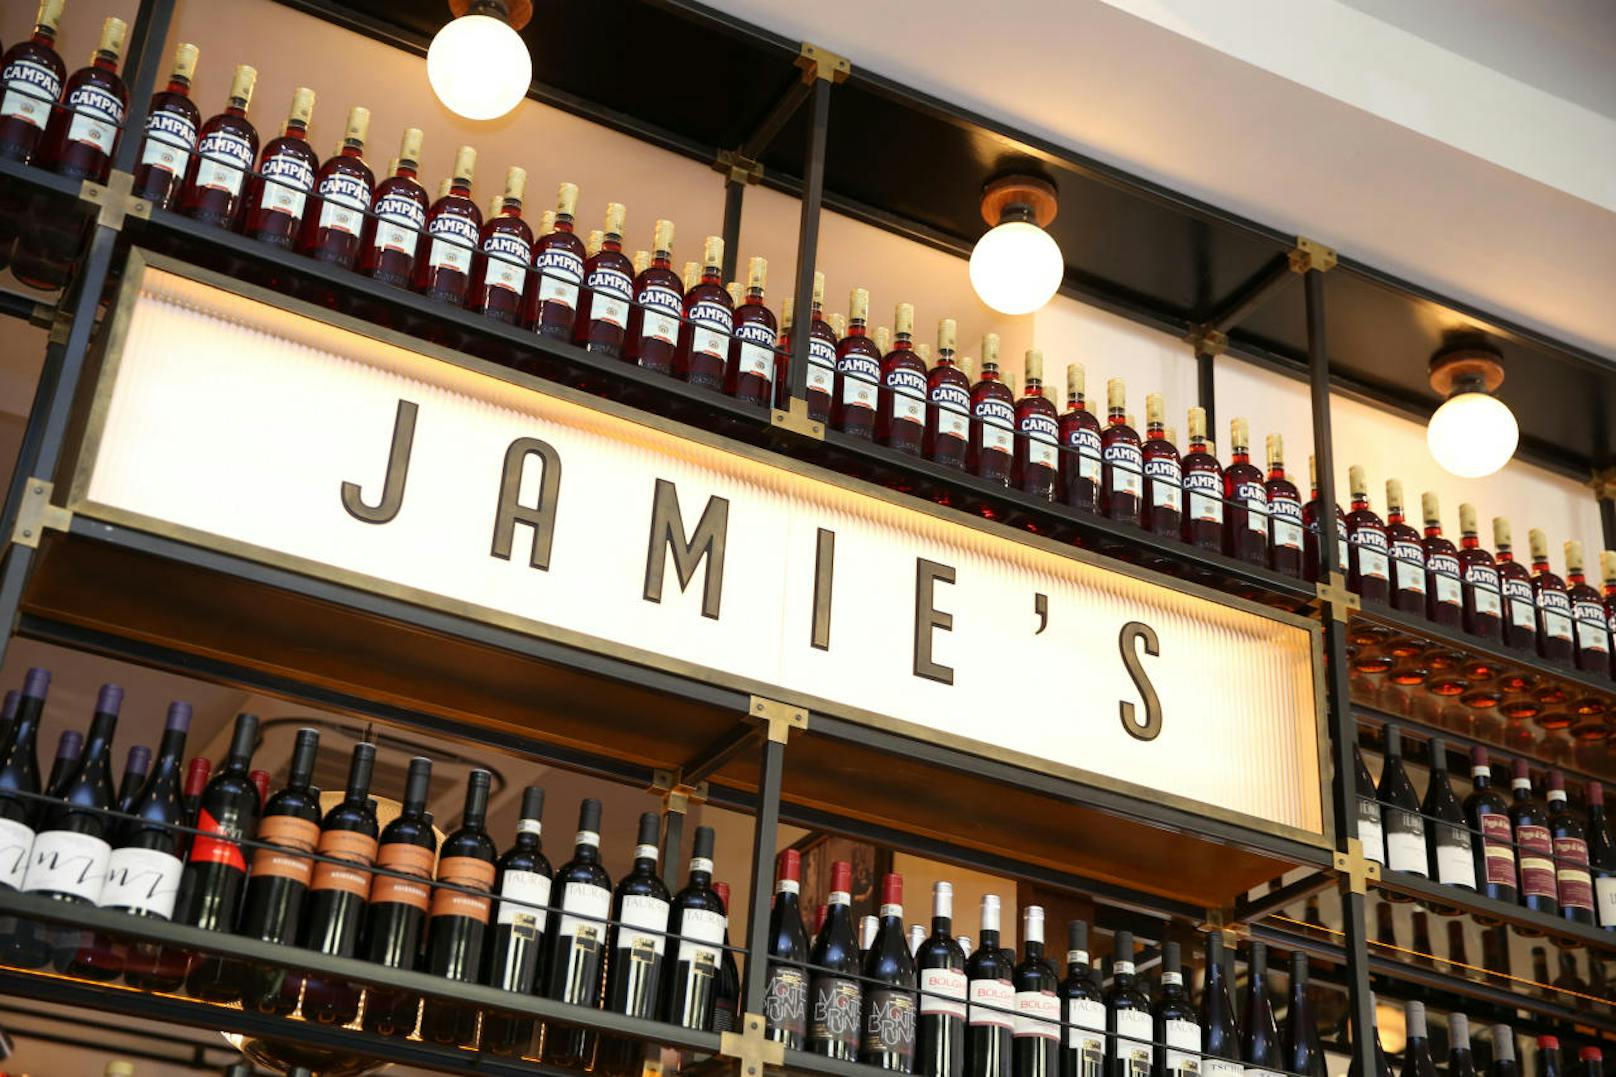 Um 11 besuchte der TV-Koch sein "Jamie's" am Dr. Karl-Lueger-Platz 5 in der Innenstadt.